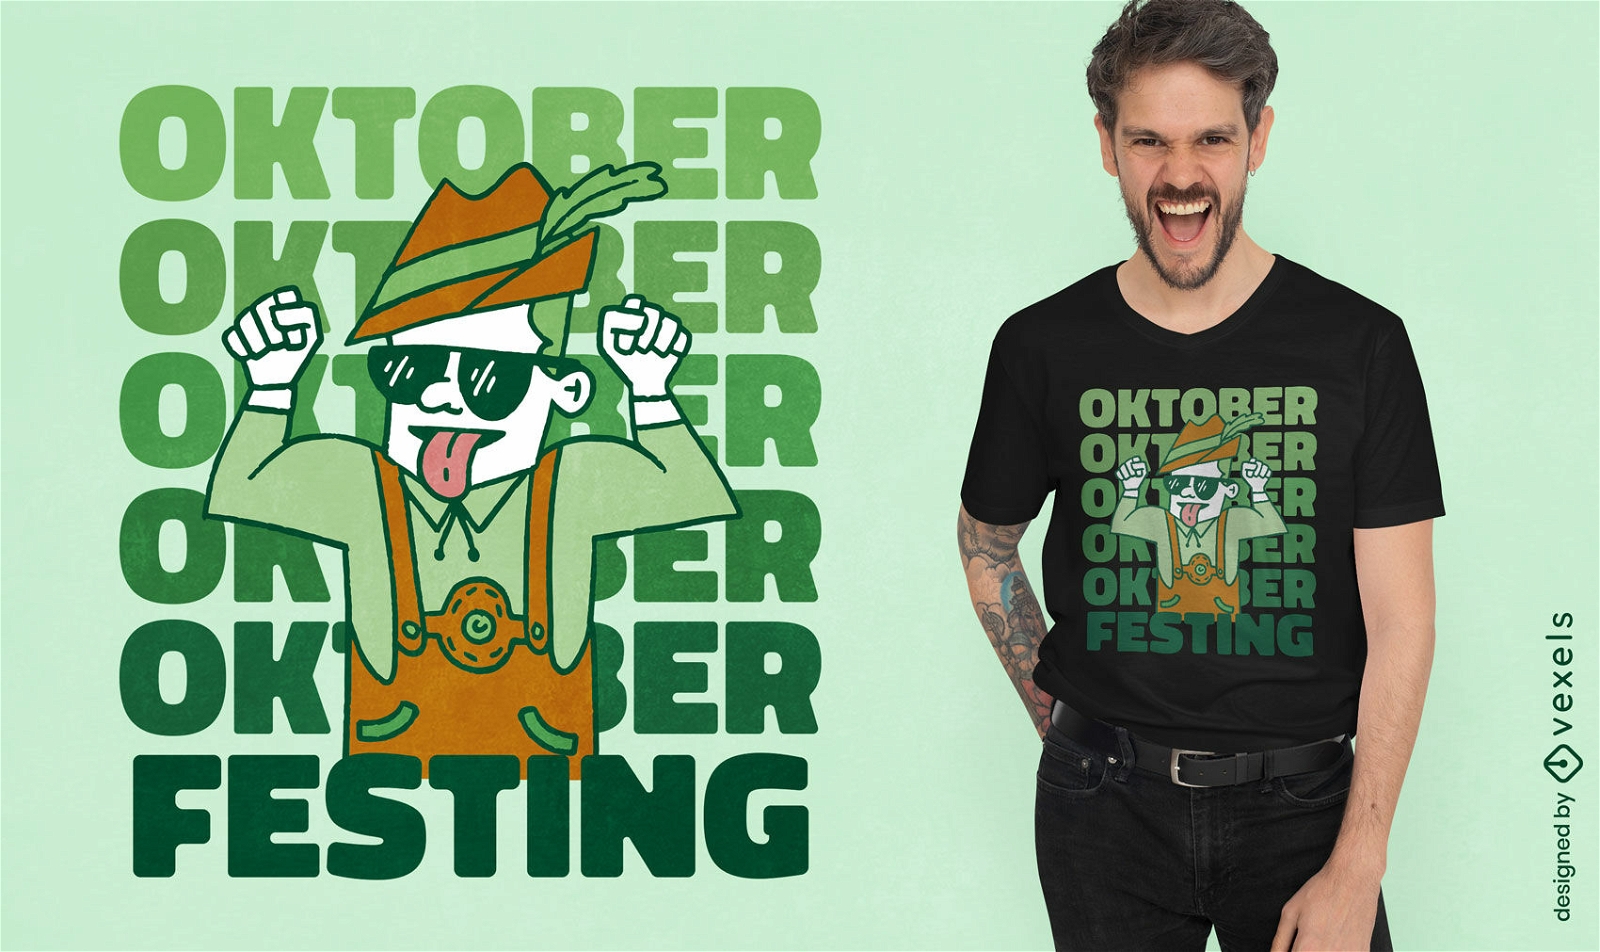 Mann feiert Oktoberfest-T-Shirt-Design